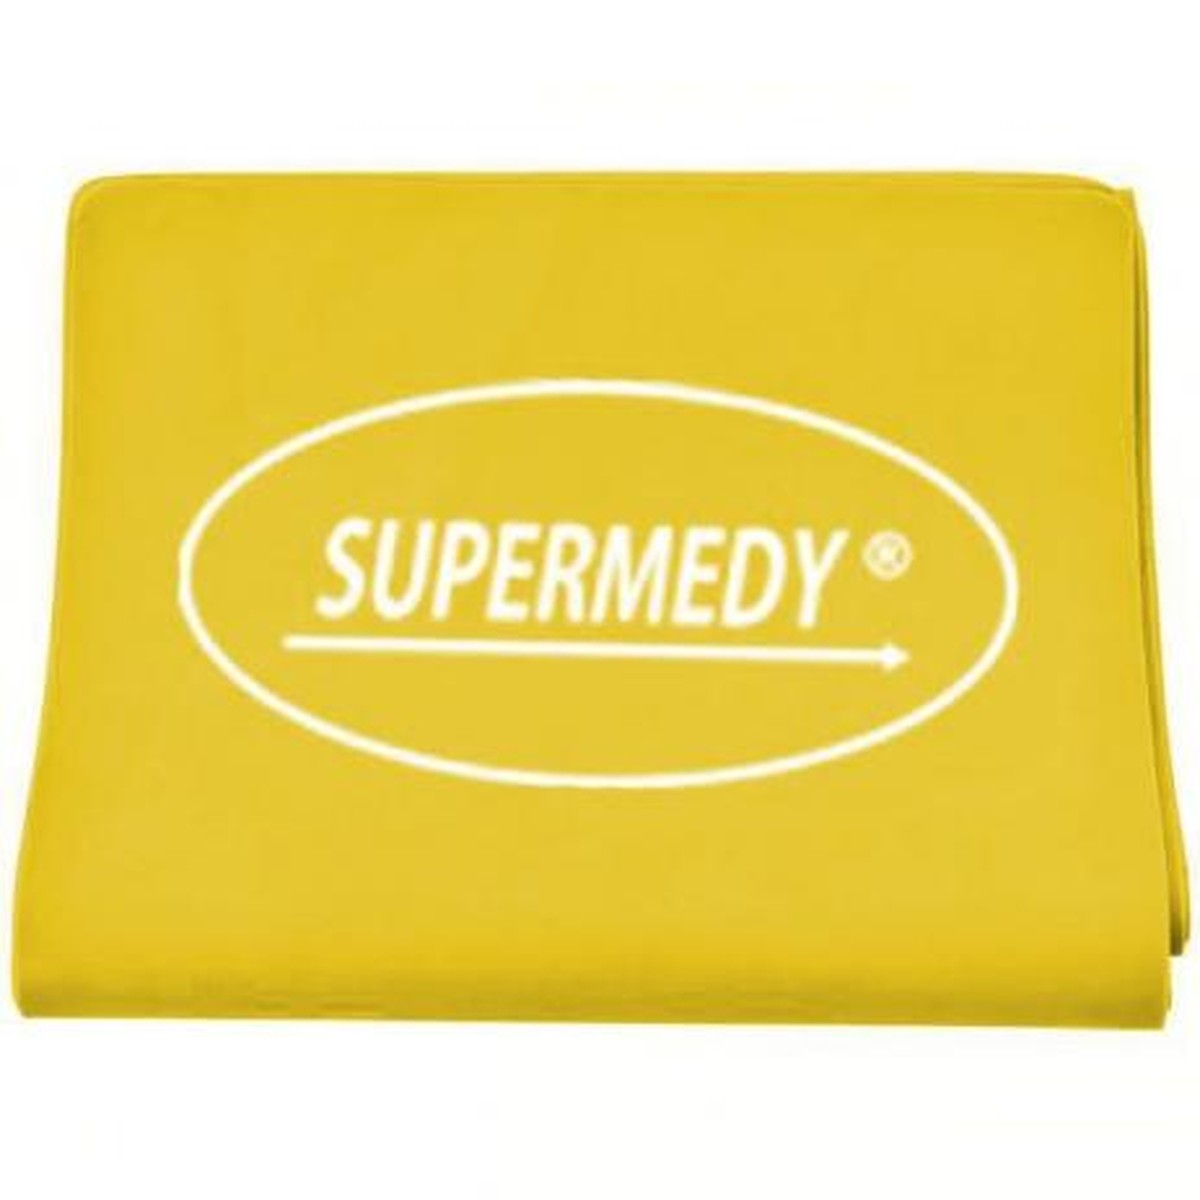 Foto do produto Faixa Super Band elástica nível leve (amarela)